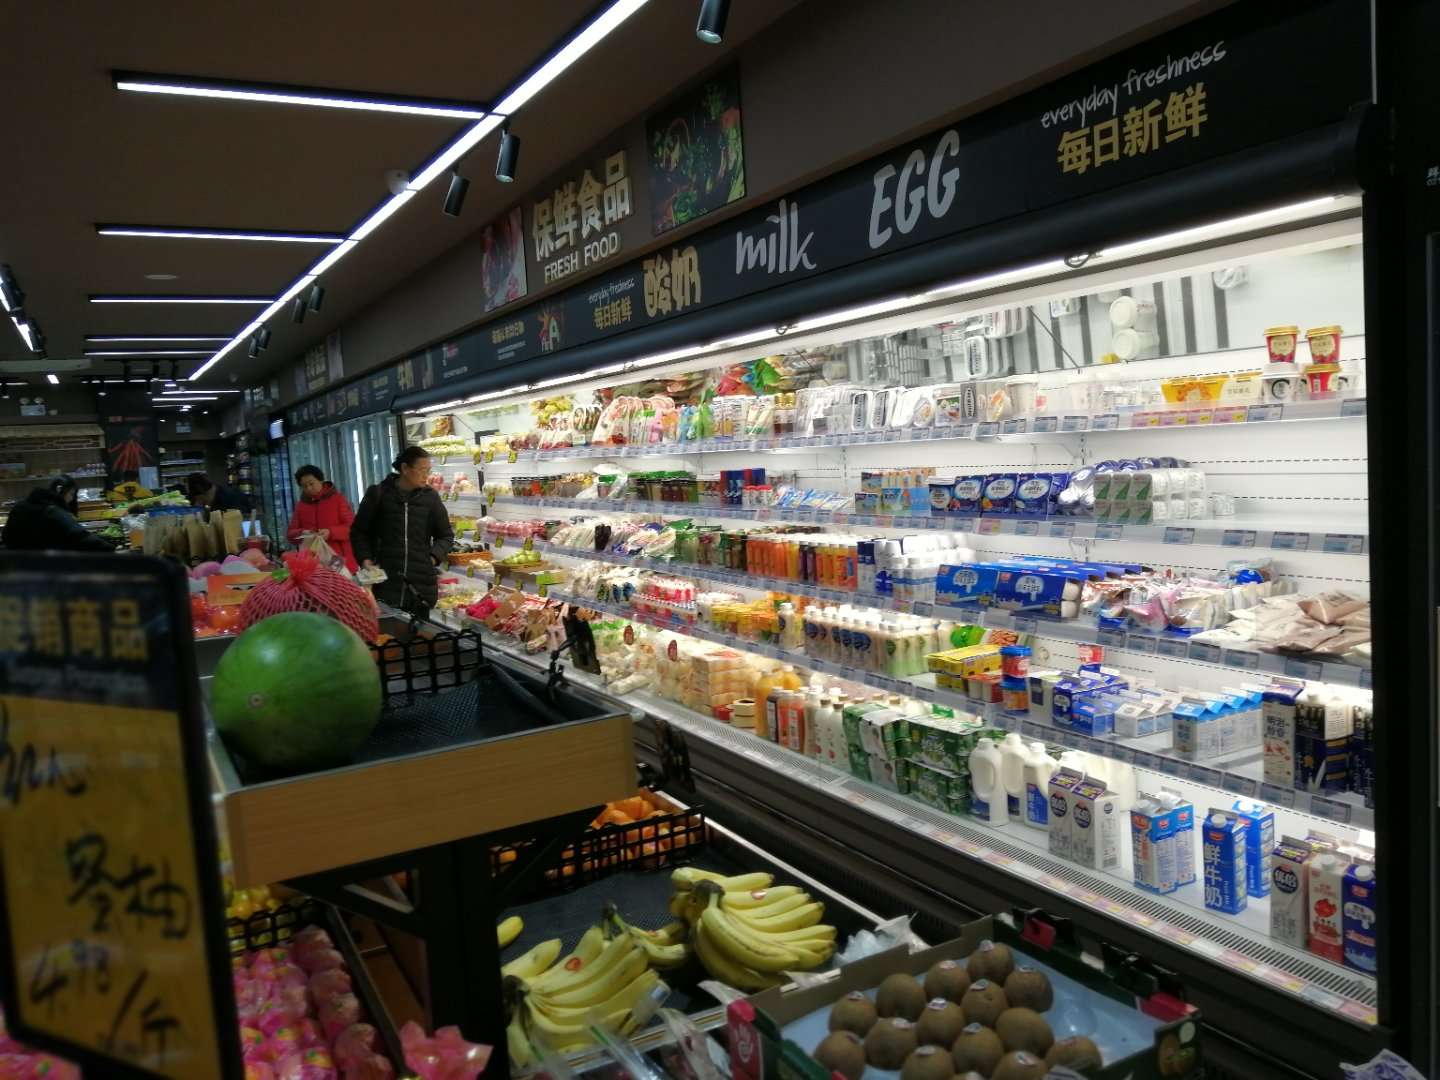 蔬菜冷藏柜 未来雪-W-FMG-12-水果保鲜柜 超市风幕柜 水果店风幕柜 商用冰箱展示柜冰柜 水果柜9